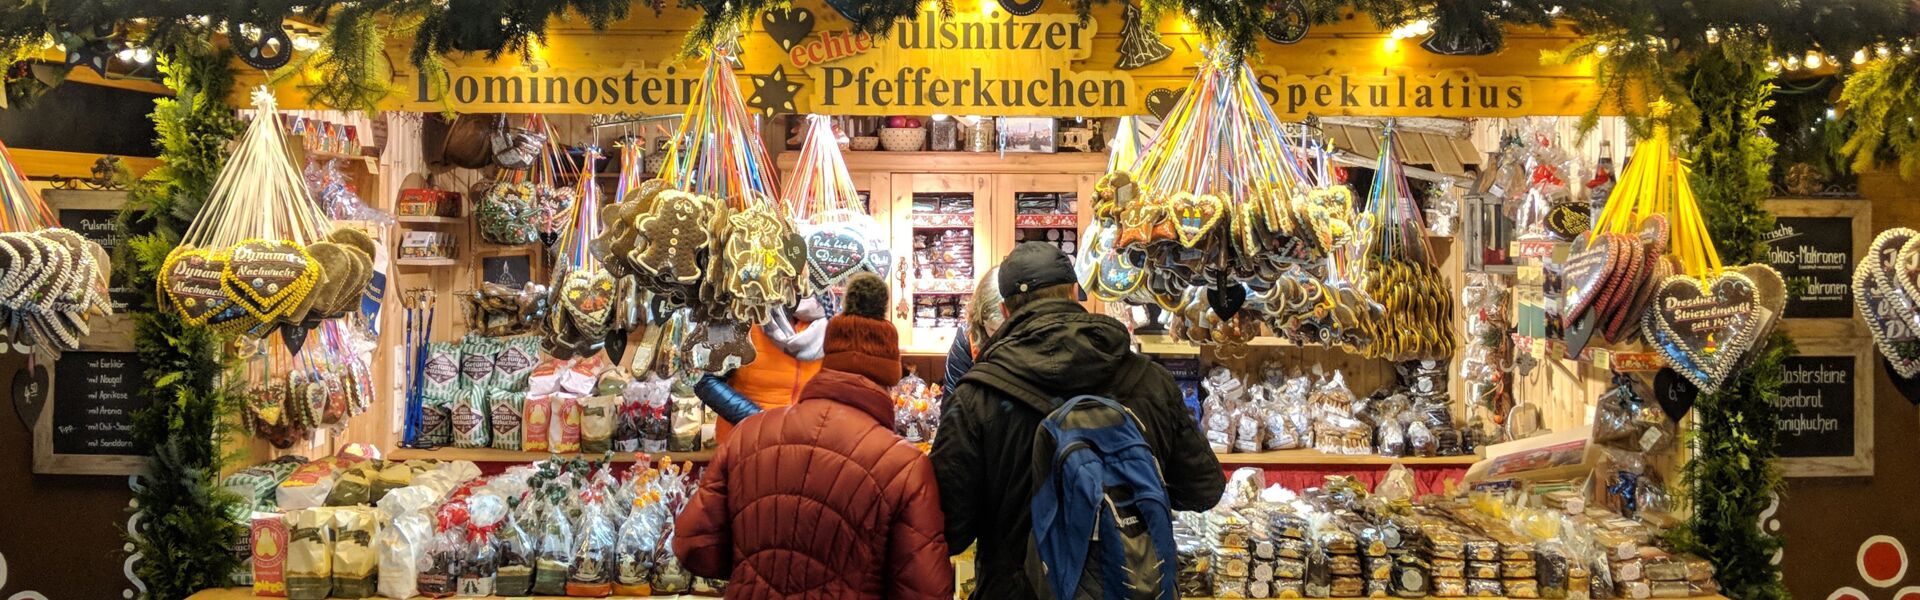 Pfefferkuchen Dresdner Striezelmarkt